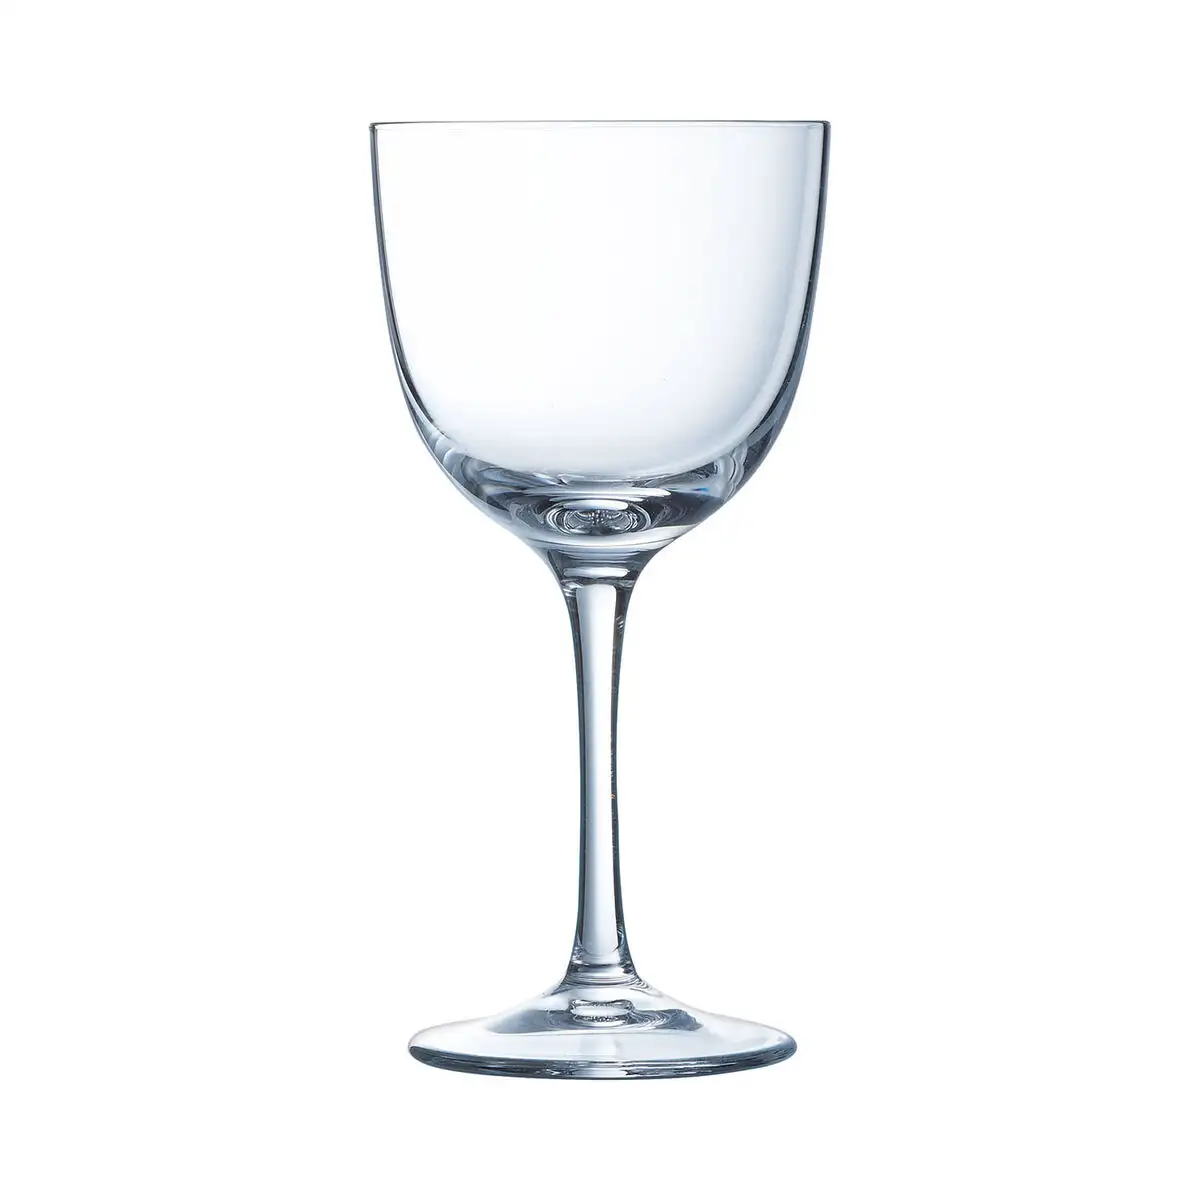 Set de verres chef sommelier nick nora cocktail transparent verre 150 ml 6 unites _4880. DIAYTAR SENEGAL - L'Art du Shopping Facilité. Naviguez sur notre plateforme en ligne pour découvrir une expérience d'achat fluide et agréable, avec une gamme de produits adaptés à tous.